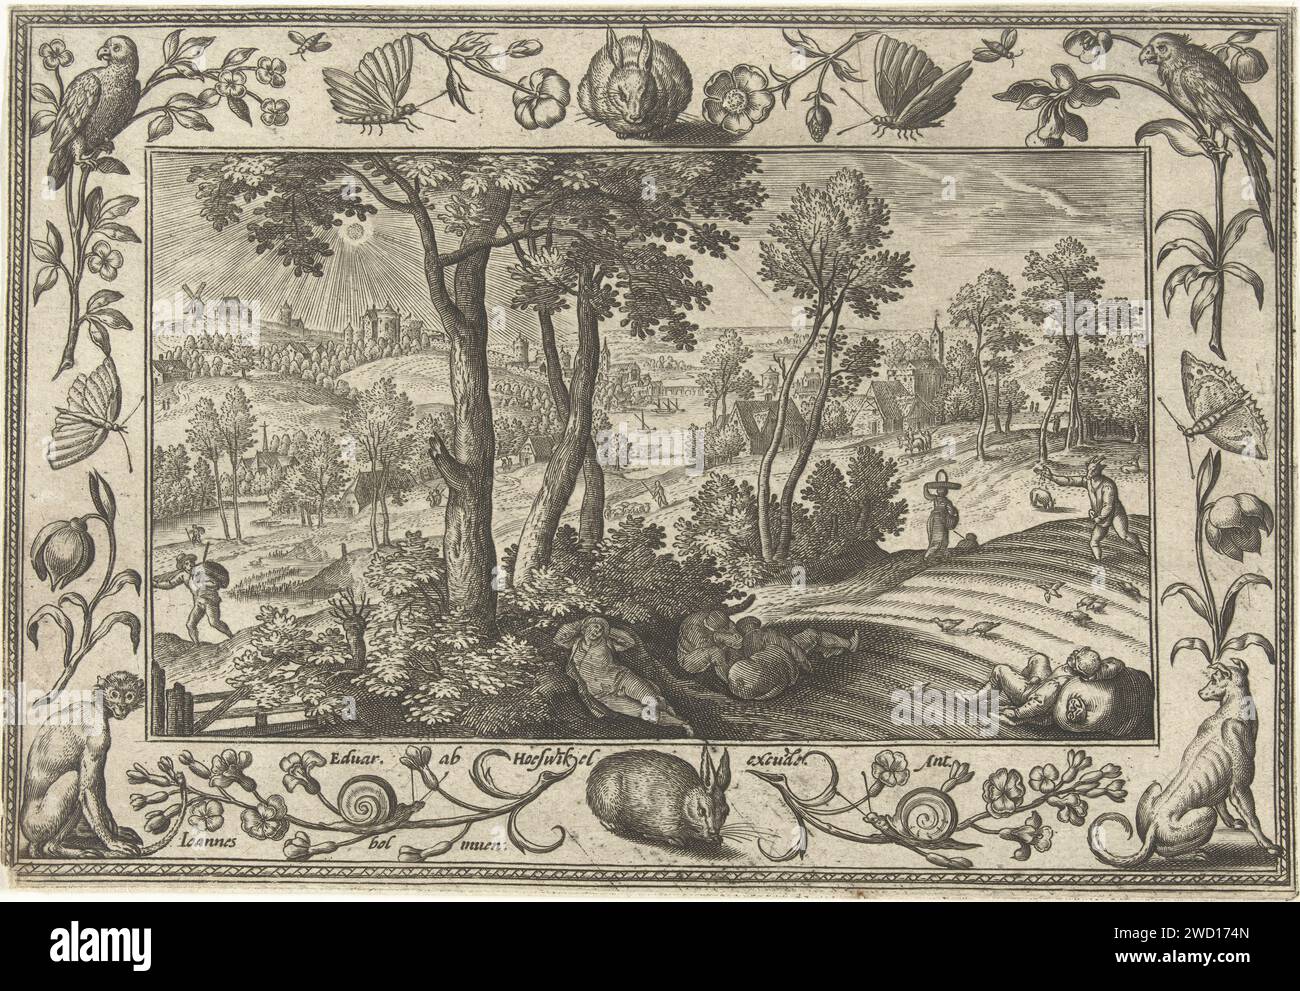 Unkräuter unter dem Weizen, Adriaen Collaert, nach Hans Bol, 1582–1586 Druck Landschaft mit Akker und die Darstellung des Gleichnisses Christi über die Unkräuter zwischen den Weizen. Manche Bauern schlafen im Vordergrund. In der Zwischenzeit sät der Teufel Unkraut zwischen das Getreide. Der Druck enthält eine dekorative Liste von Blumen und Tieren. Er ist Teil einer vierbeinigen Serie von Landschaften mit biblischen, mythologischen Szenen und Jagdszenen. Antwerpener Papierstich während der Sämann und seine Diener schliefen, säte sein Feind (der Teufel) zwischen den Weizen ein. Bewirtschaftetes Land. Blumen  Ornament. Dekorativ Stockfoto